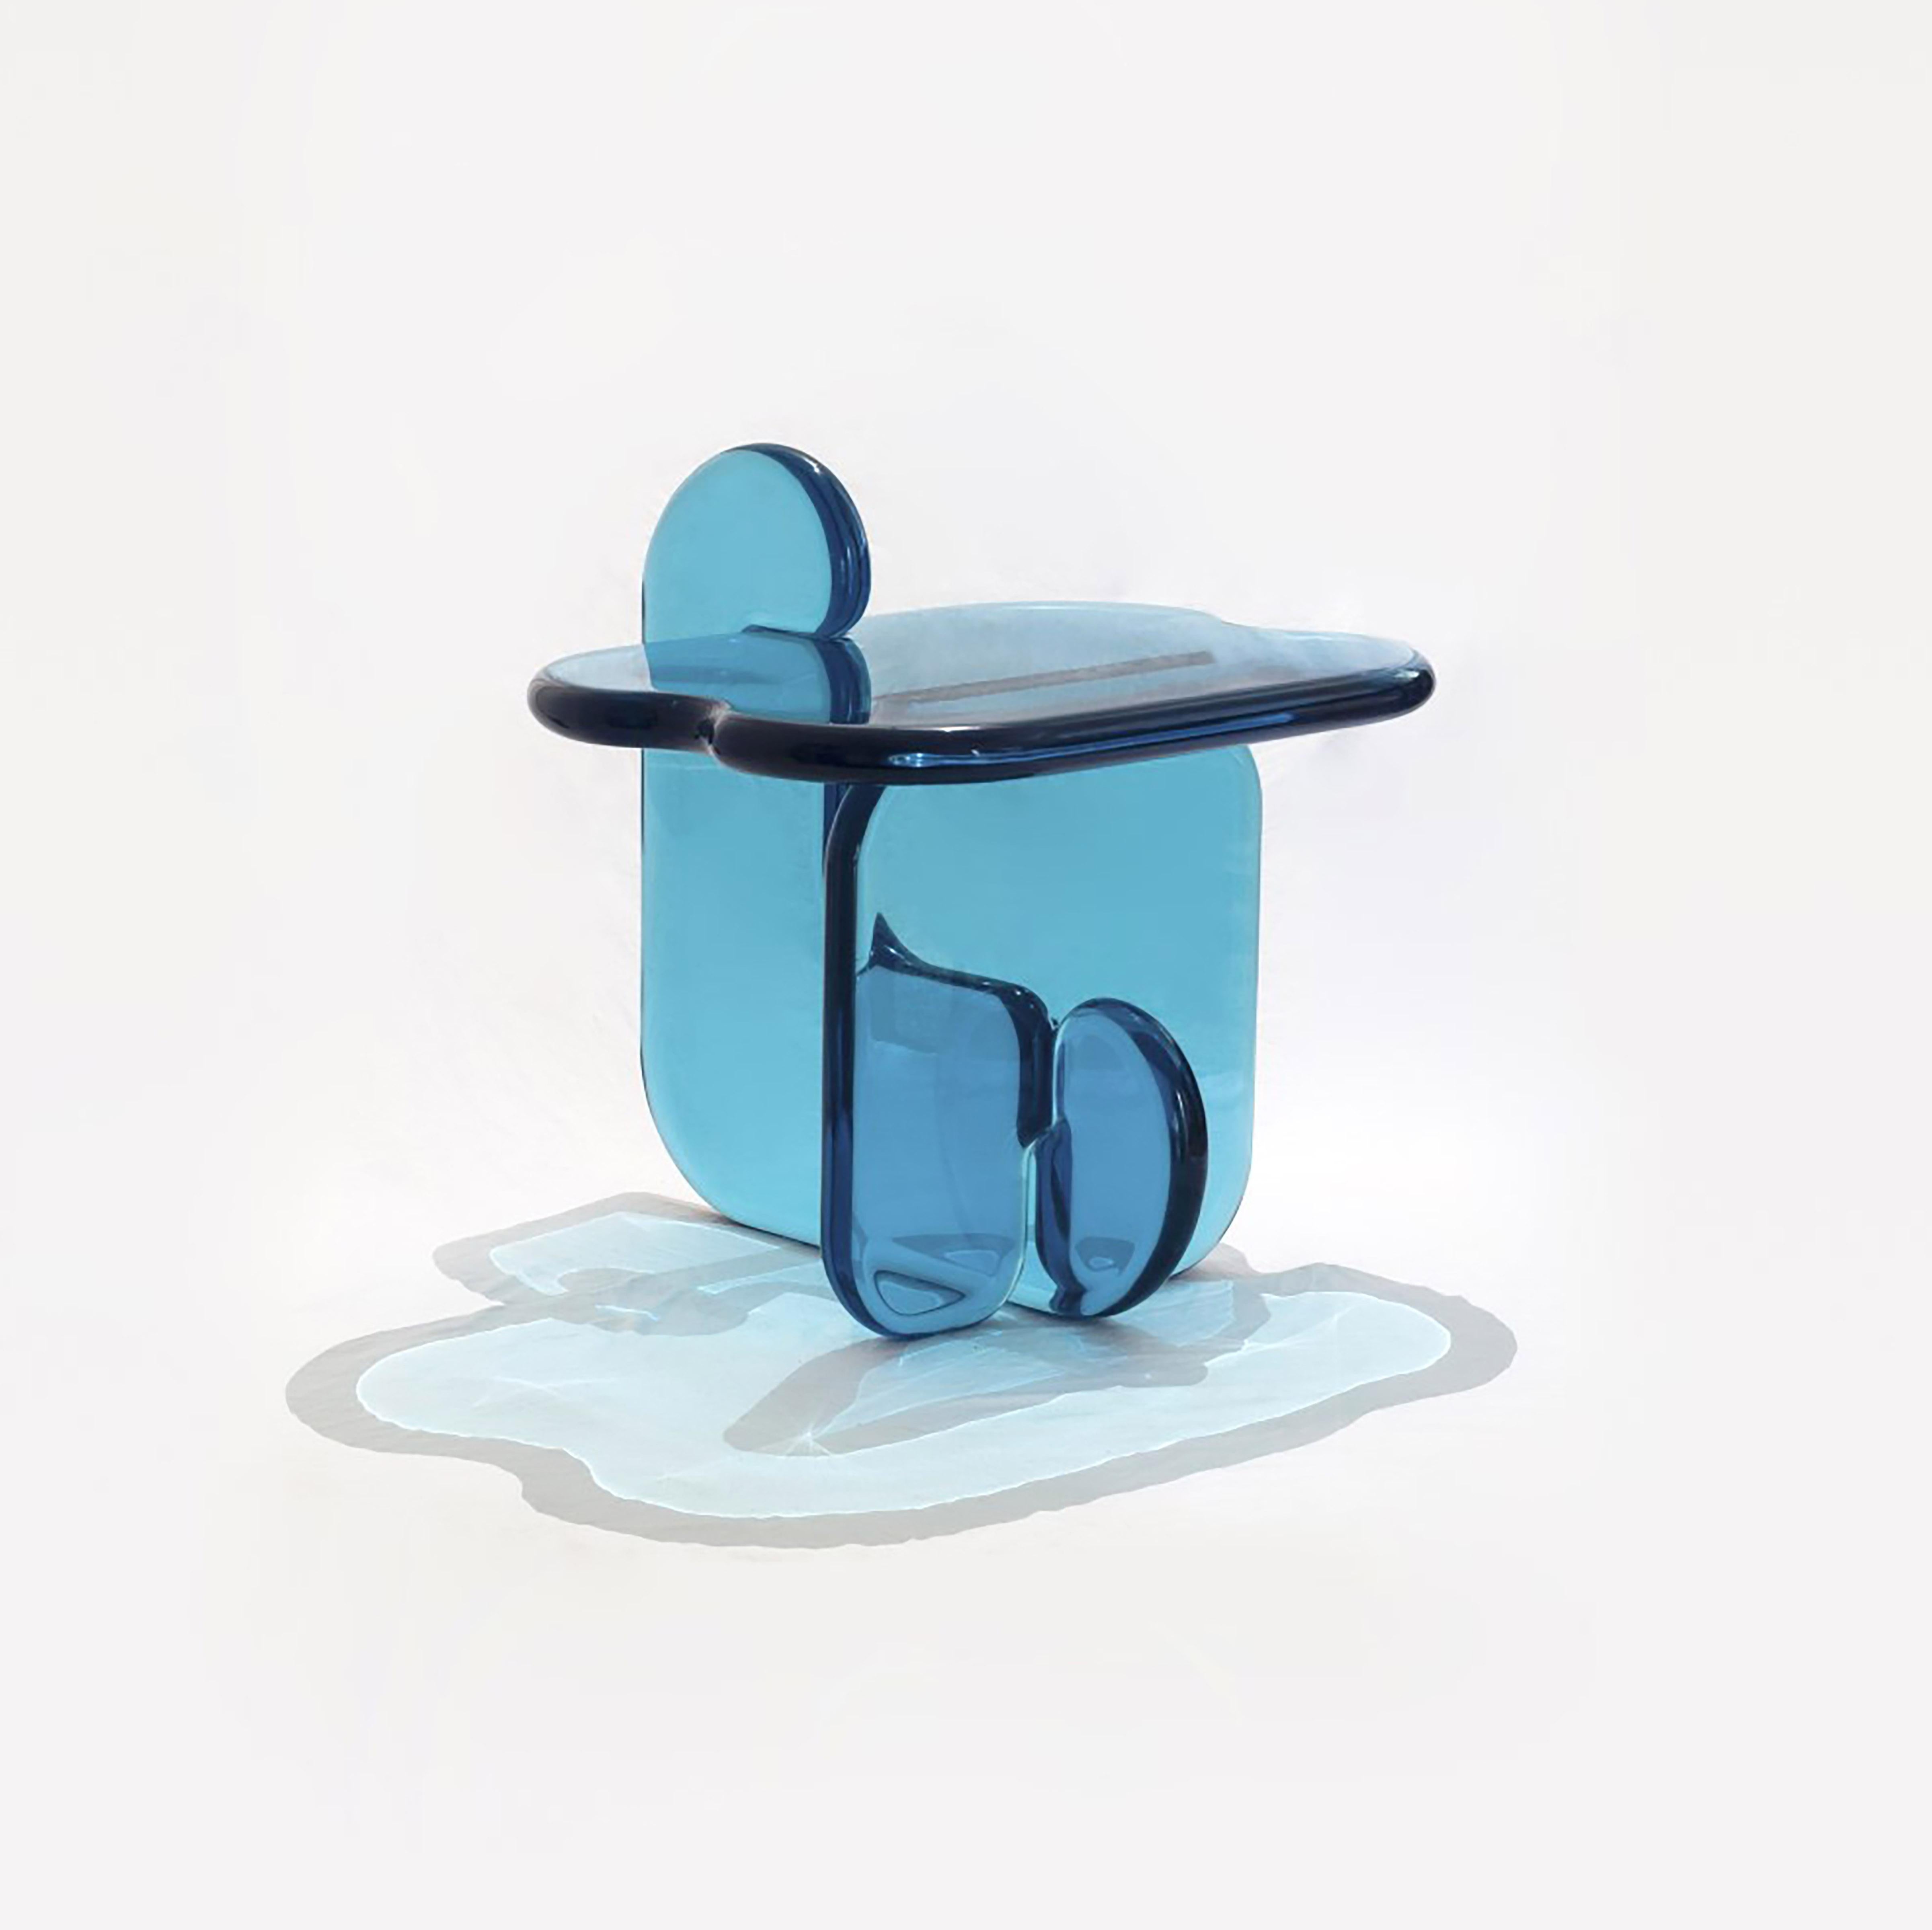 Cette table d'appoint s'inscrit dans la continuité de la série de meubles sculpturaux Plump. Cette table transparente est un ajout contemporain et moderne à tout espace. Les formes jouent sur l'effet que produit la résine lorsque la lumière est